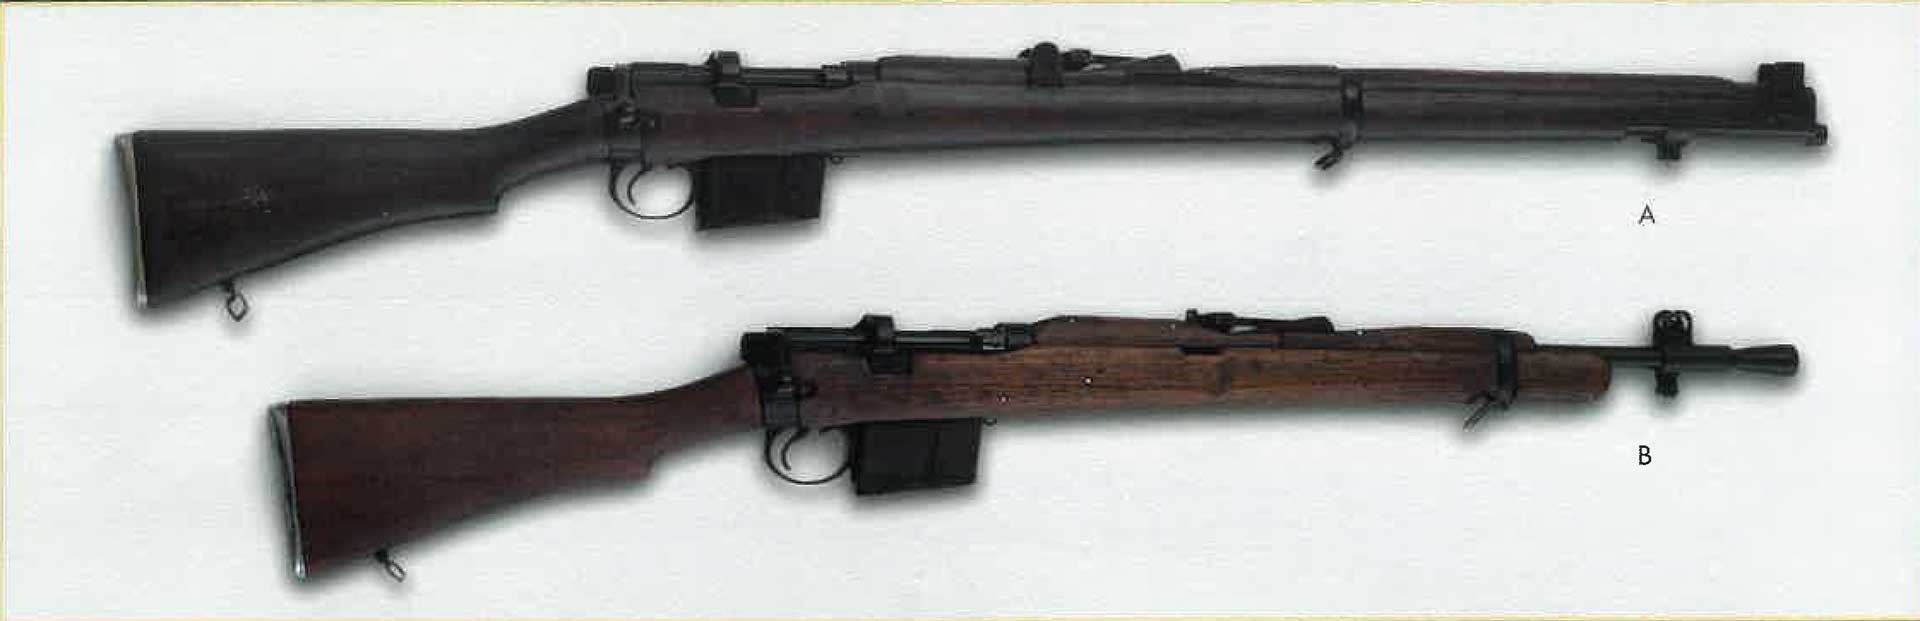 Ishapore 2A1 rifle shown above a Gibbs Rifle Company Jungle Carbine.